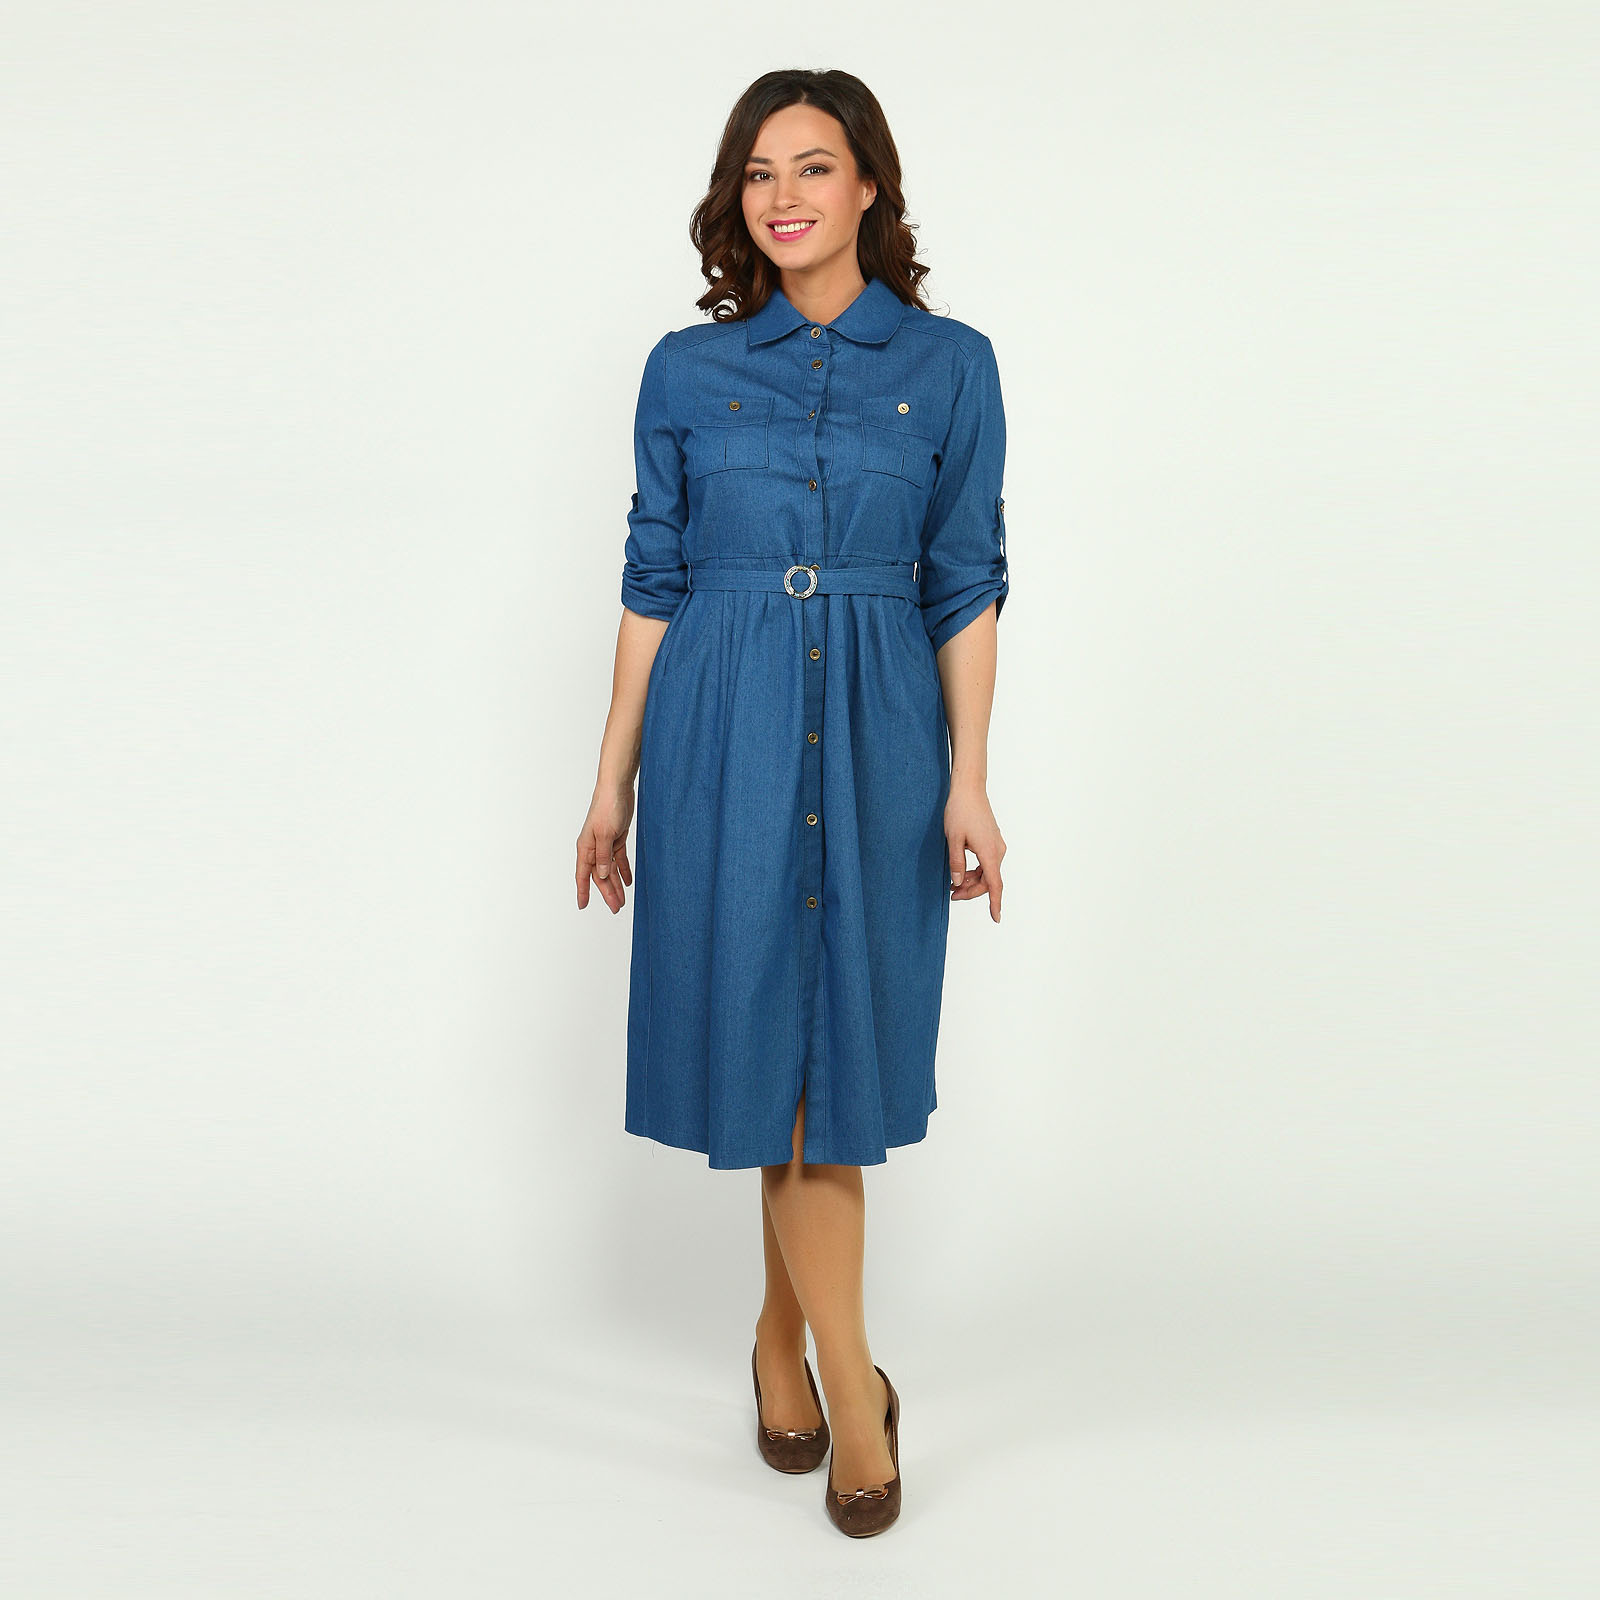 Платье-рубашка из джинсовой ткани Elletto Life, размер 54, цвет голубой - фото 1